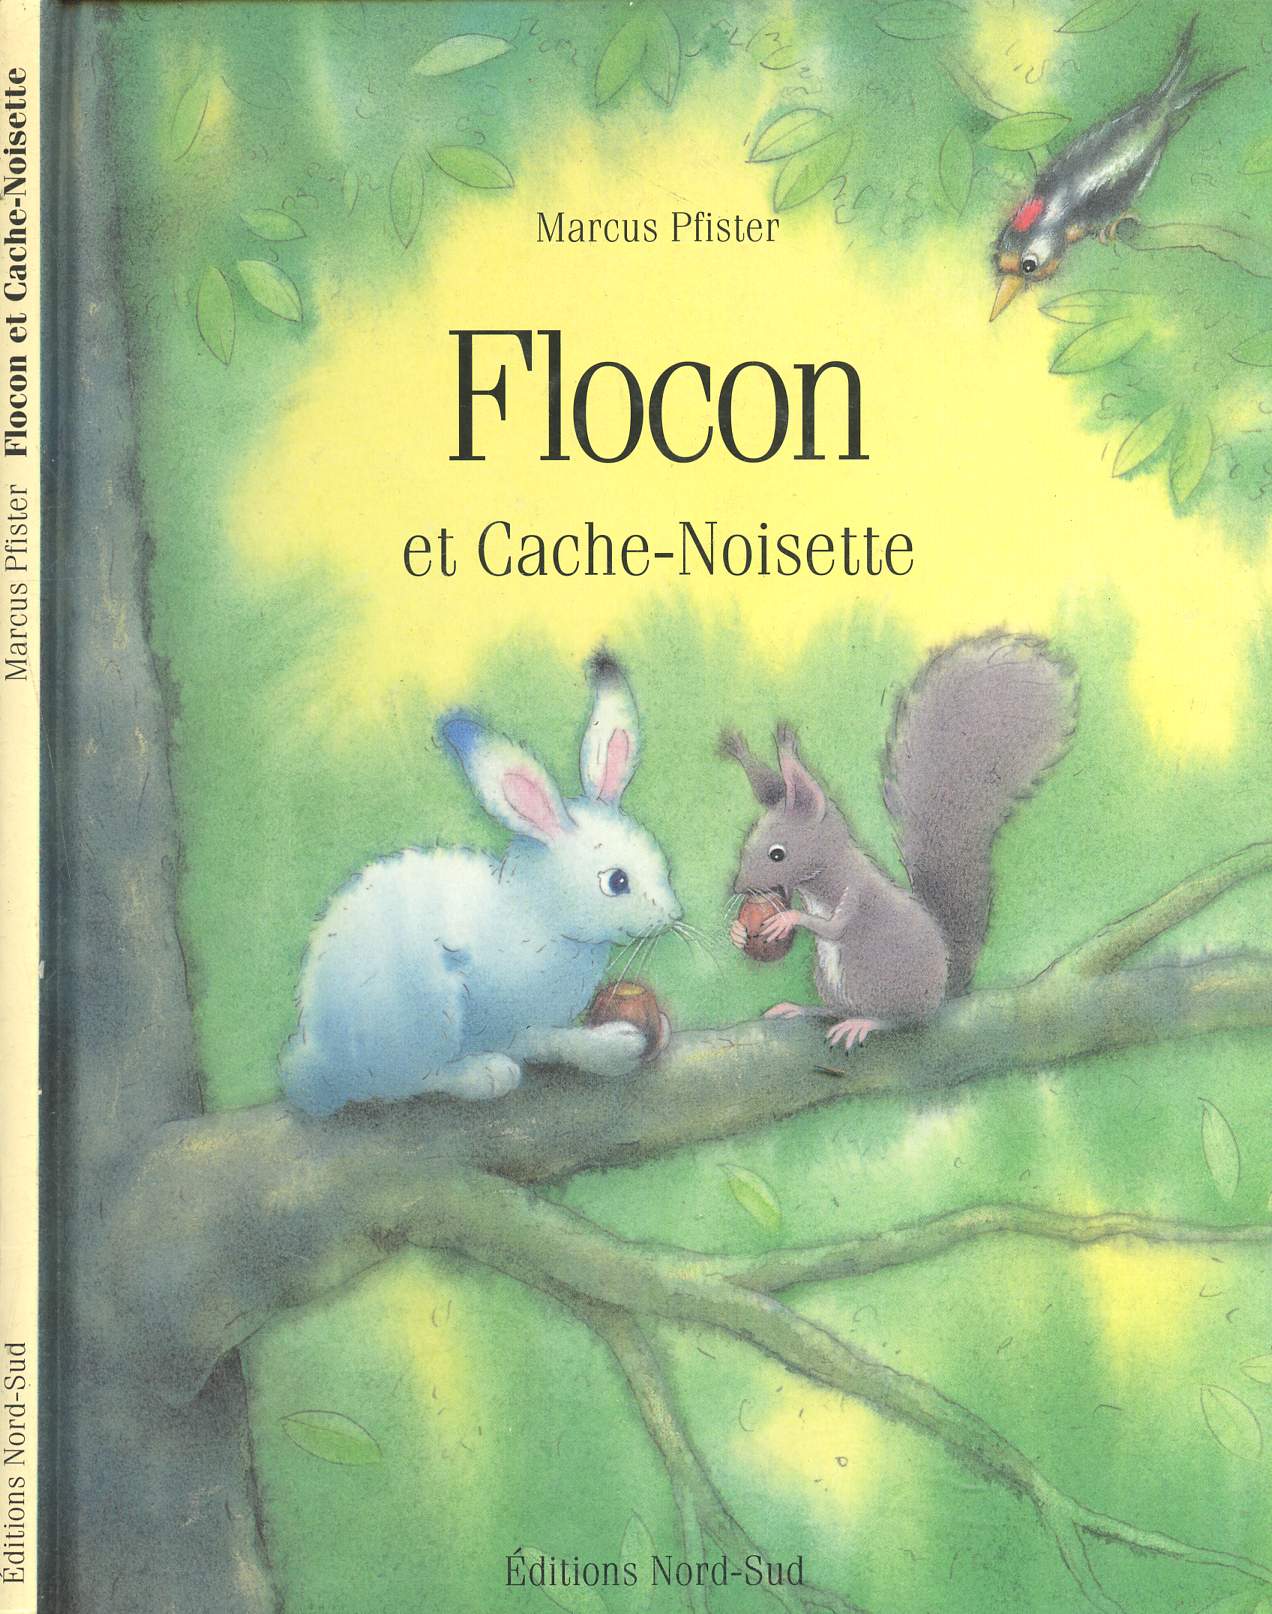 Flocon et Cache-Noisette